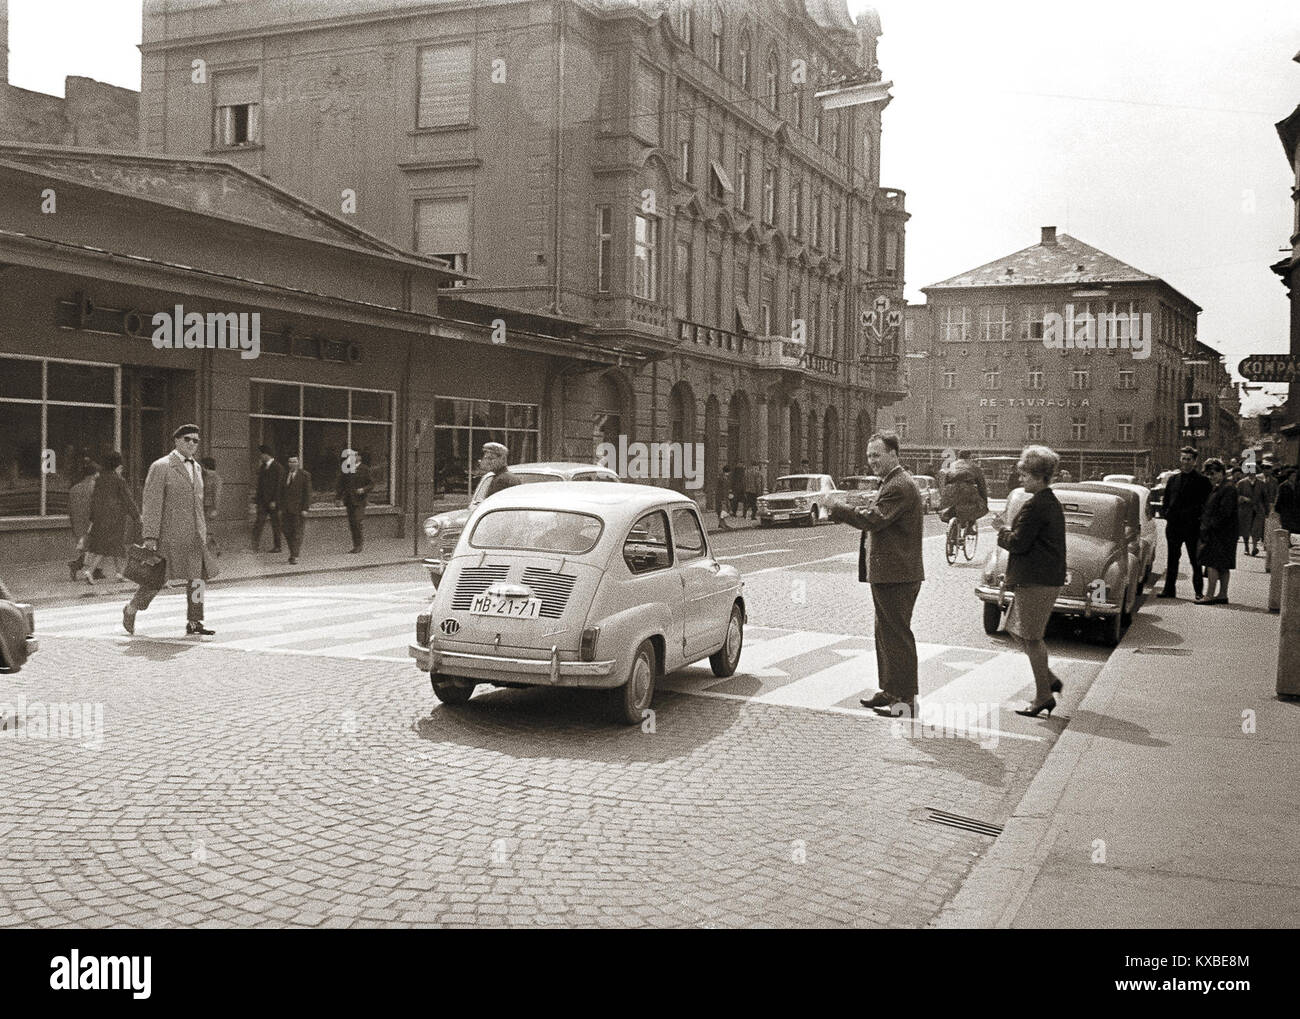 Maribor - Trg svobode - kultura voznikov 1964 Stock Photo